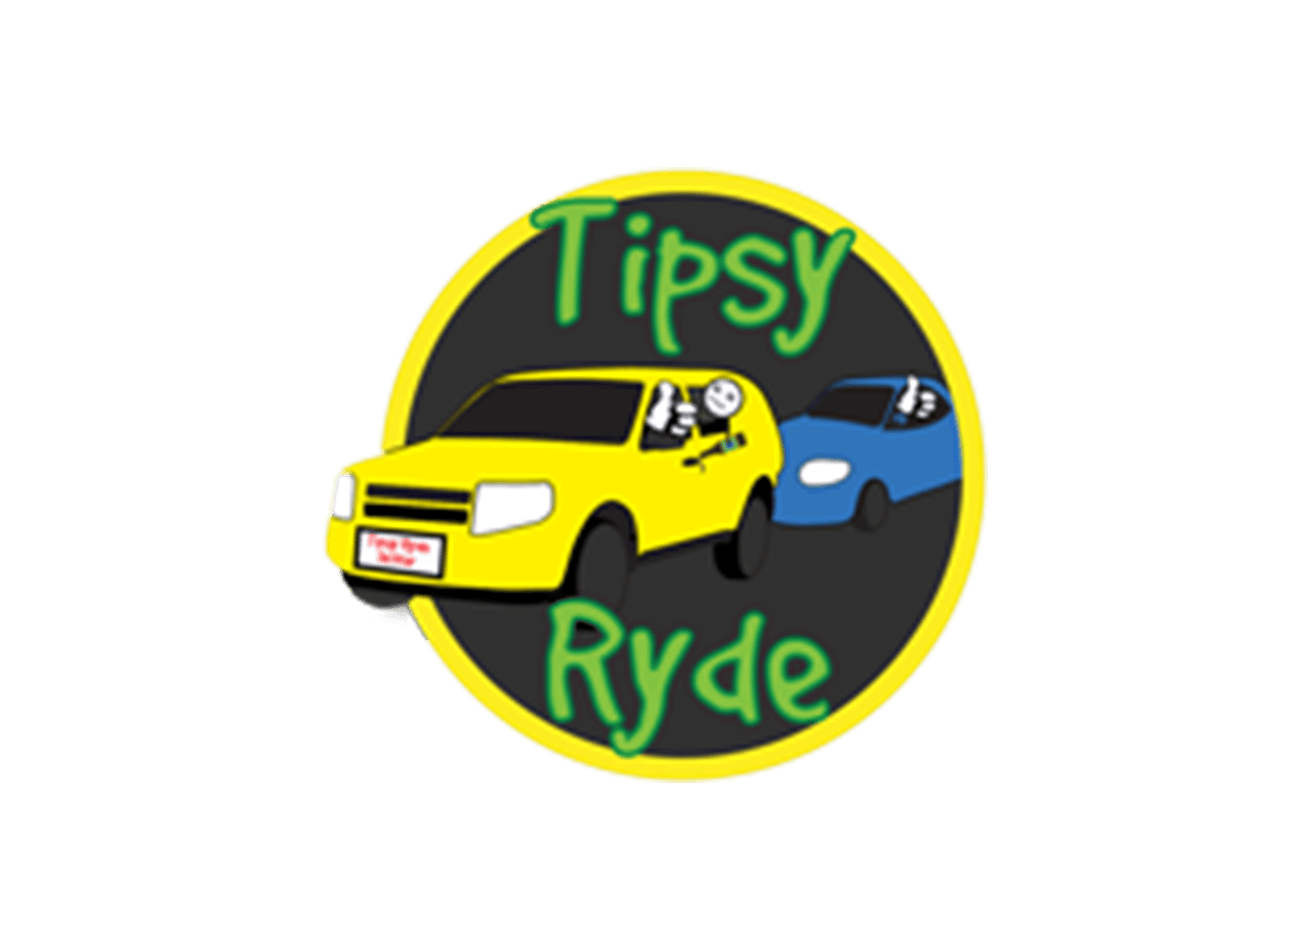 Tipsyryde-Fahrerassistenz und Lieferung bis zur Bordsteinkante